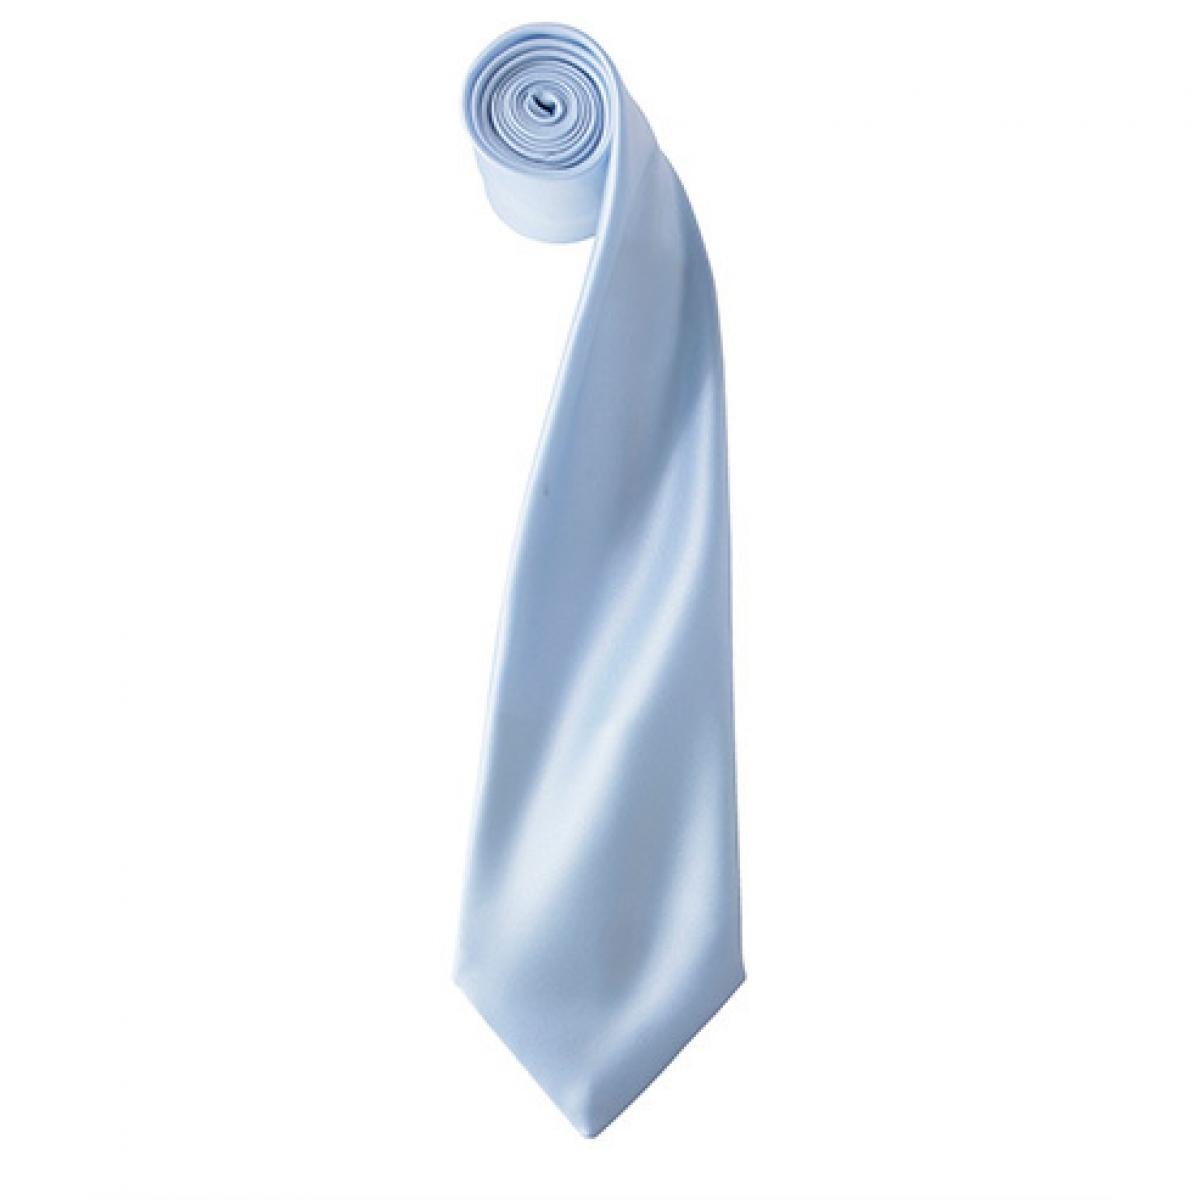 Hersteller: Premier Workwear Herstellernummer: PR750 Artikelbezeichnung: Satin Tie ´Colours´ / 144 x 8,5 cm Farbe: Light Blue (ca. Pantone 2708)